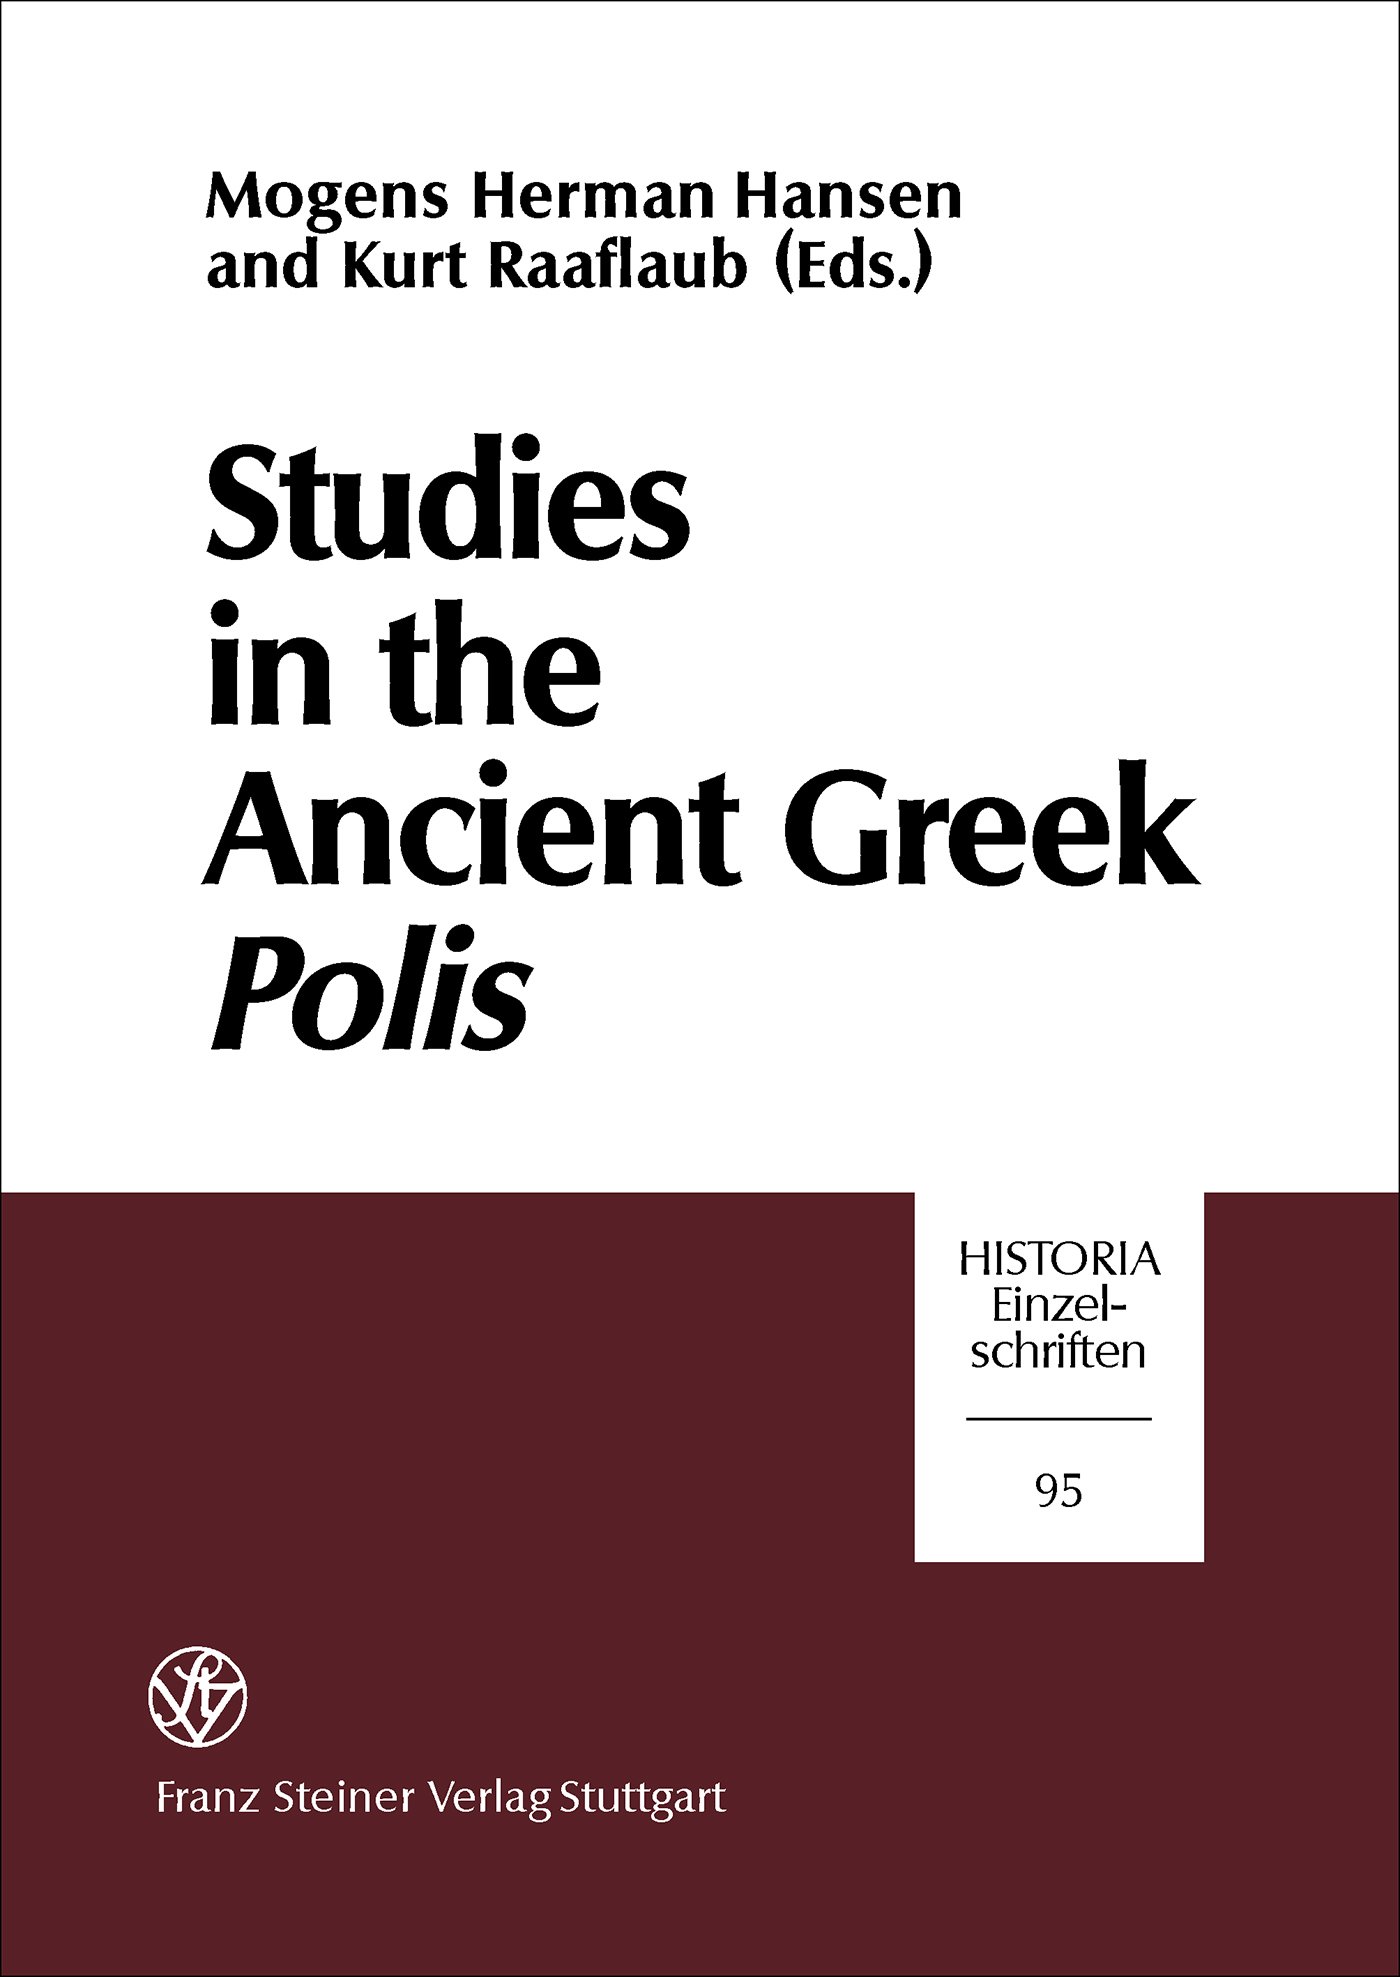 Studies in the Ancient Greek Polis